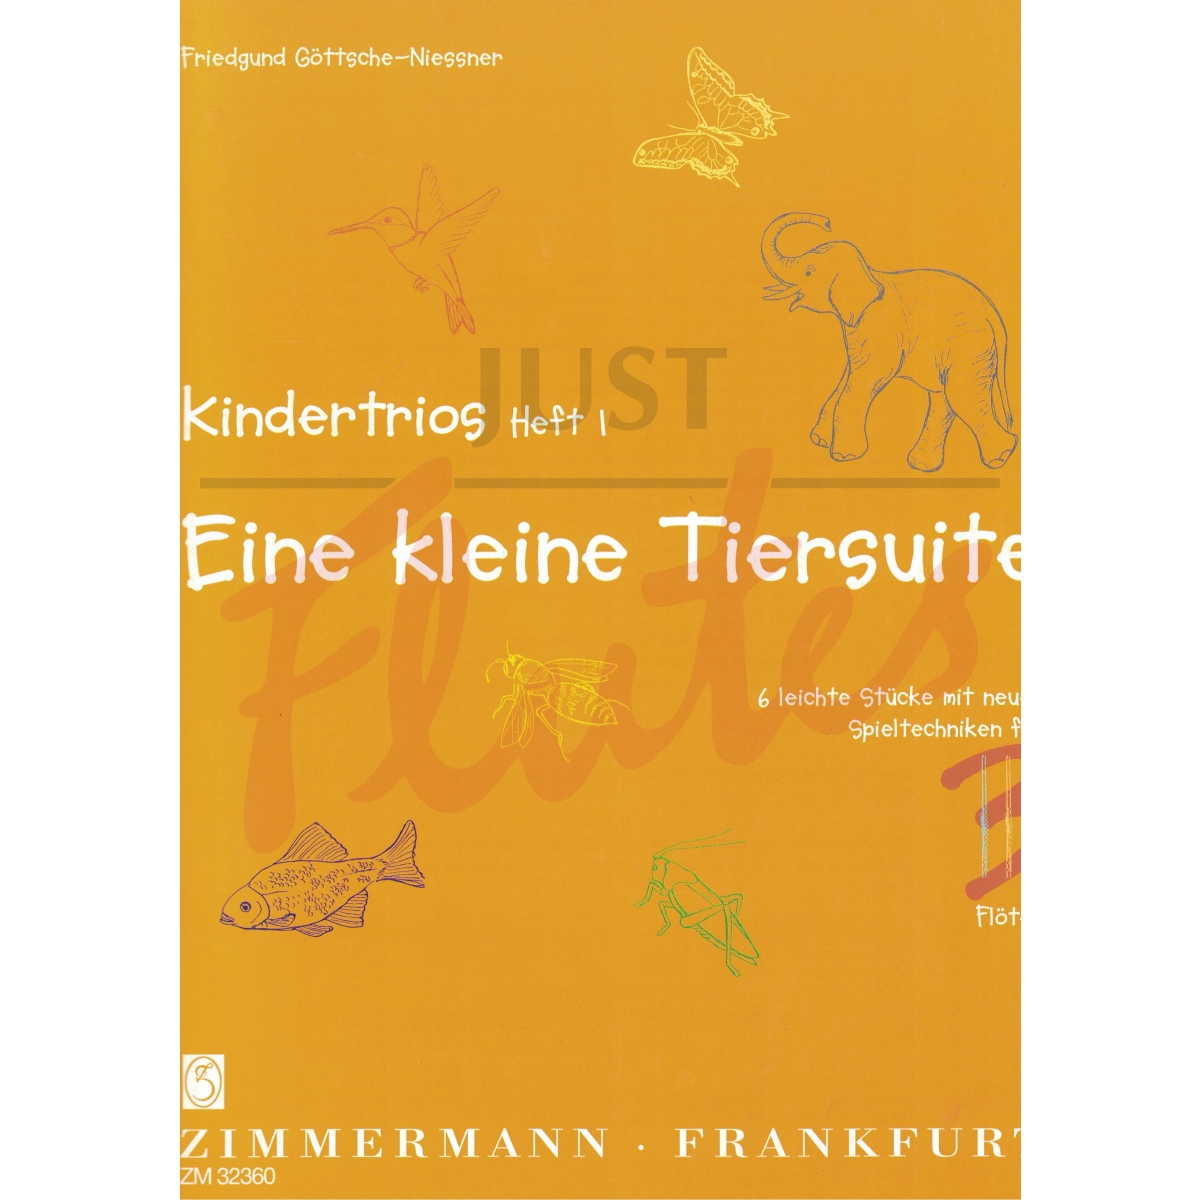 Eine Kleine Tiersuite from Kindertrios Book 1 for Three Flutes